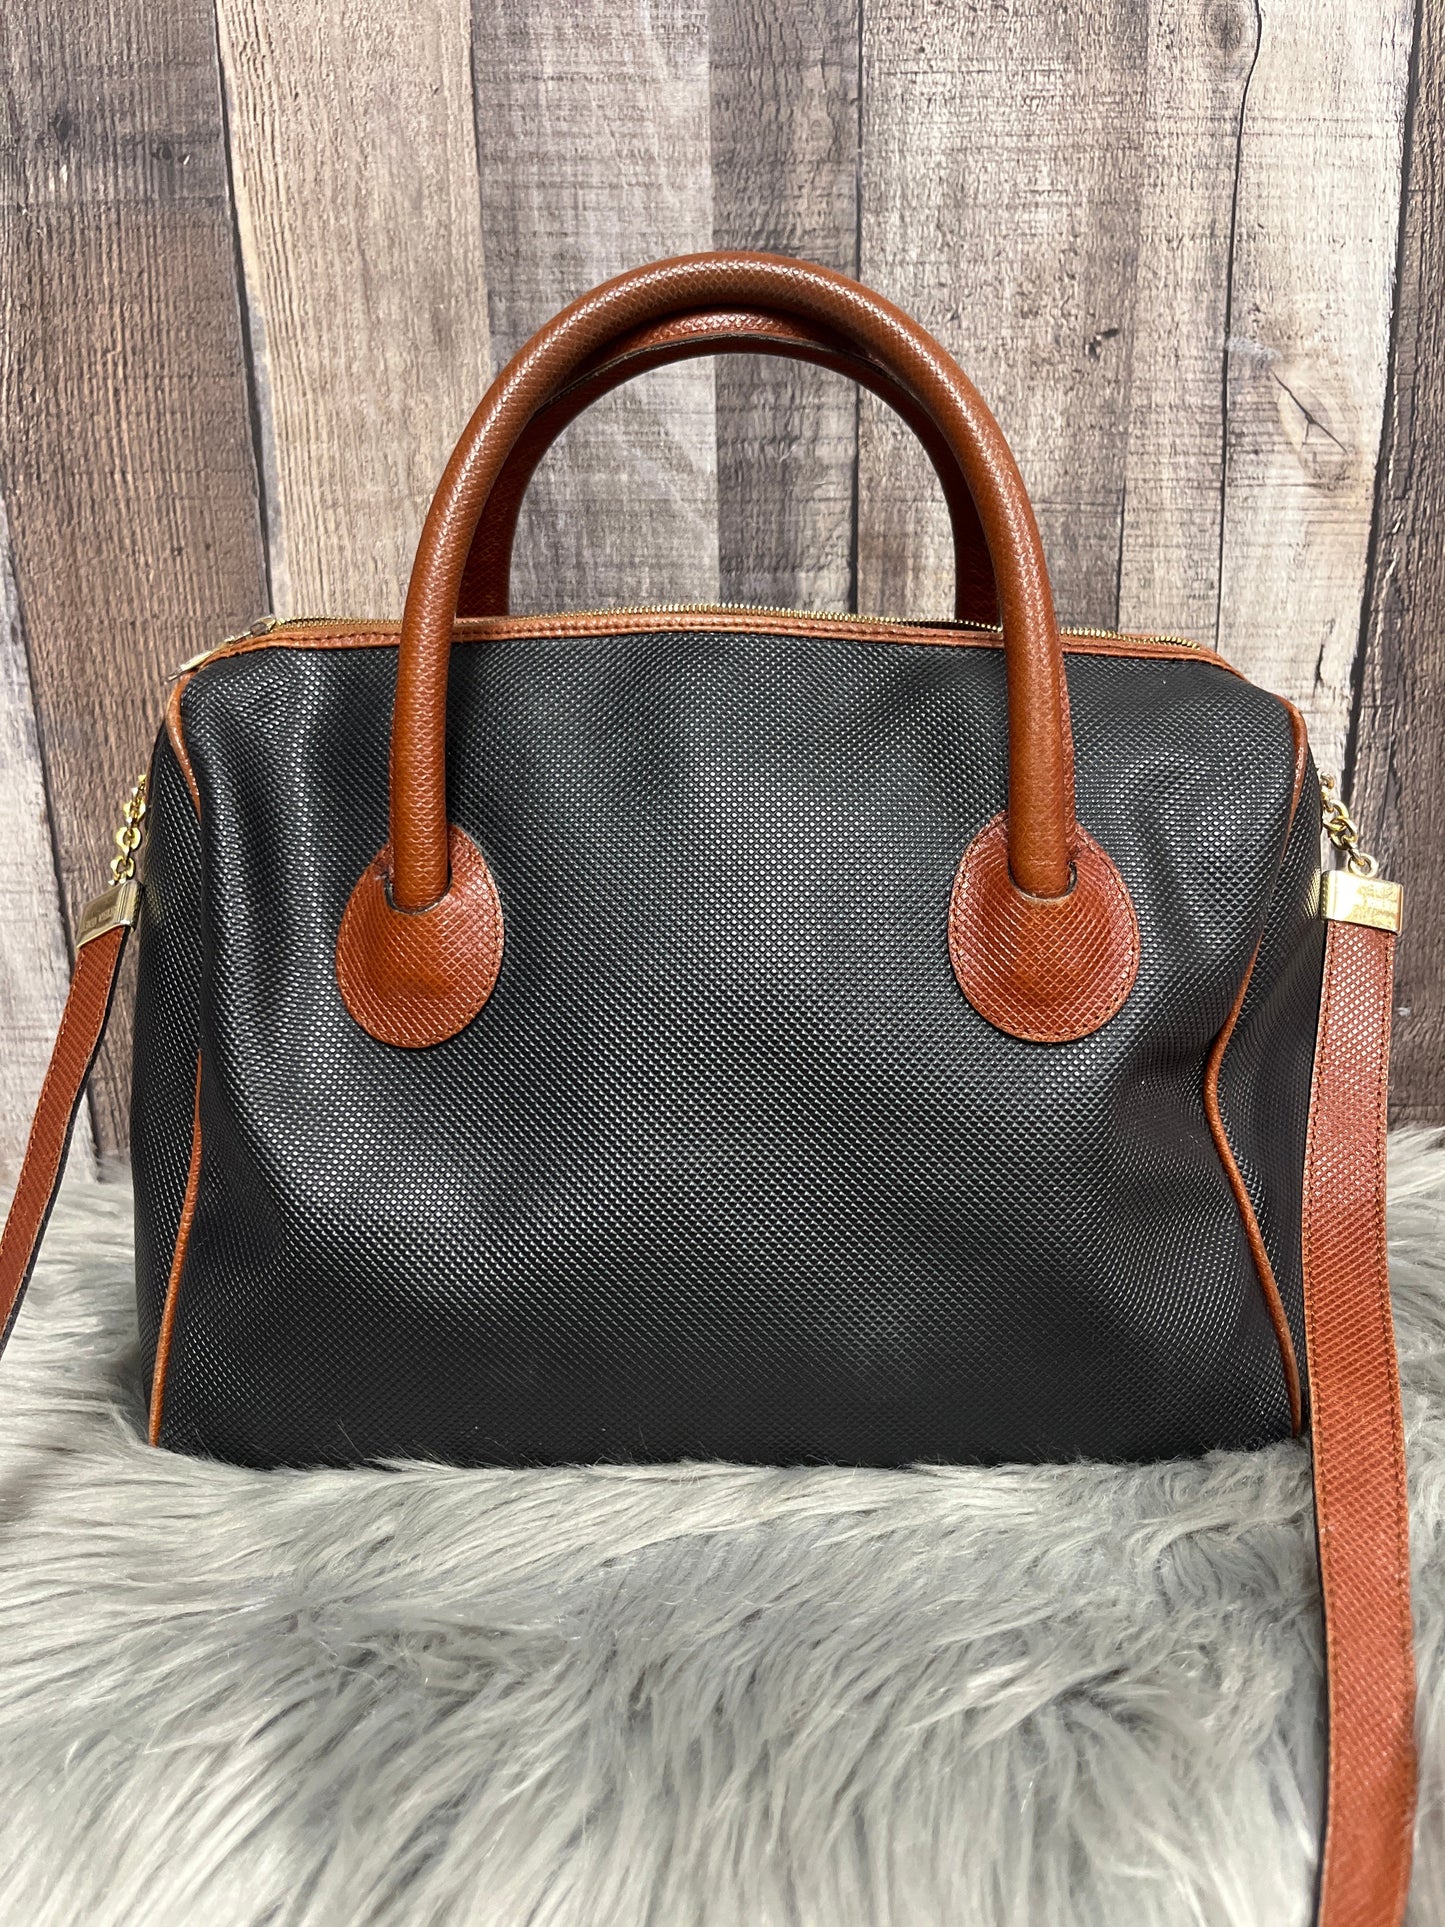 Handbag Luxury Designer By Bottega Veneta  Size: Large